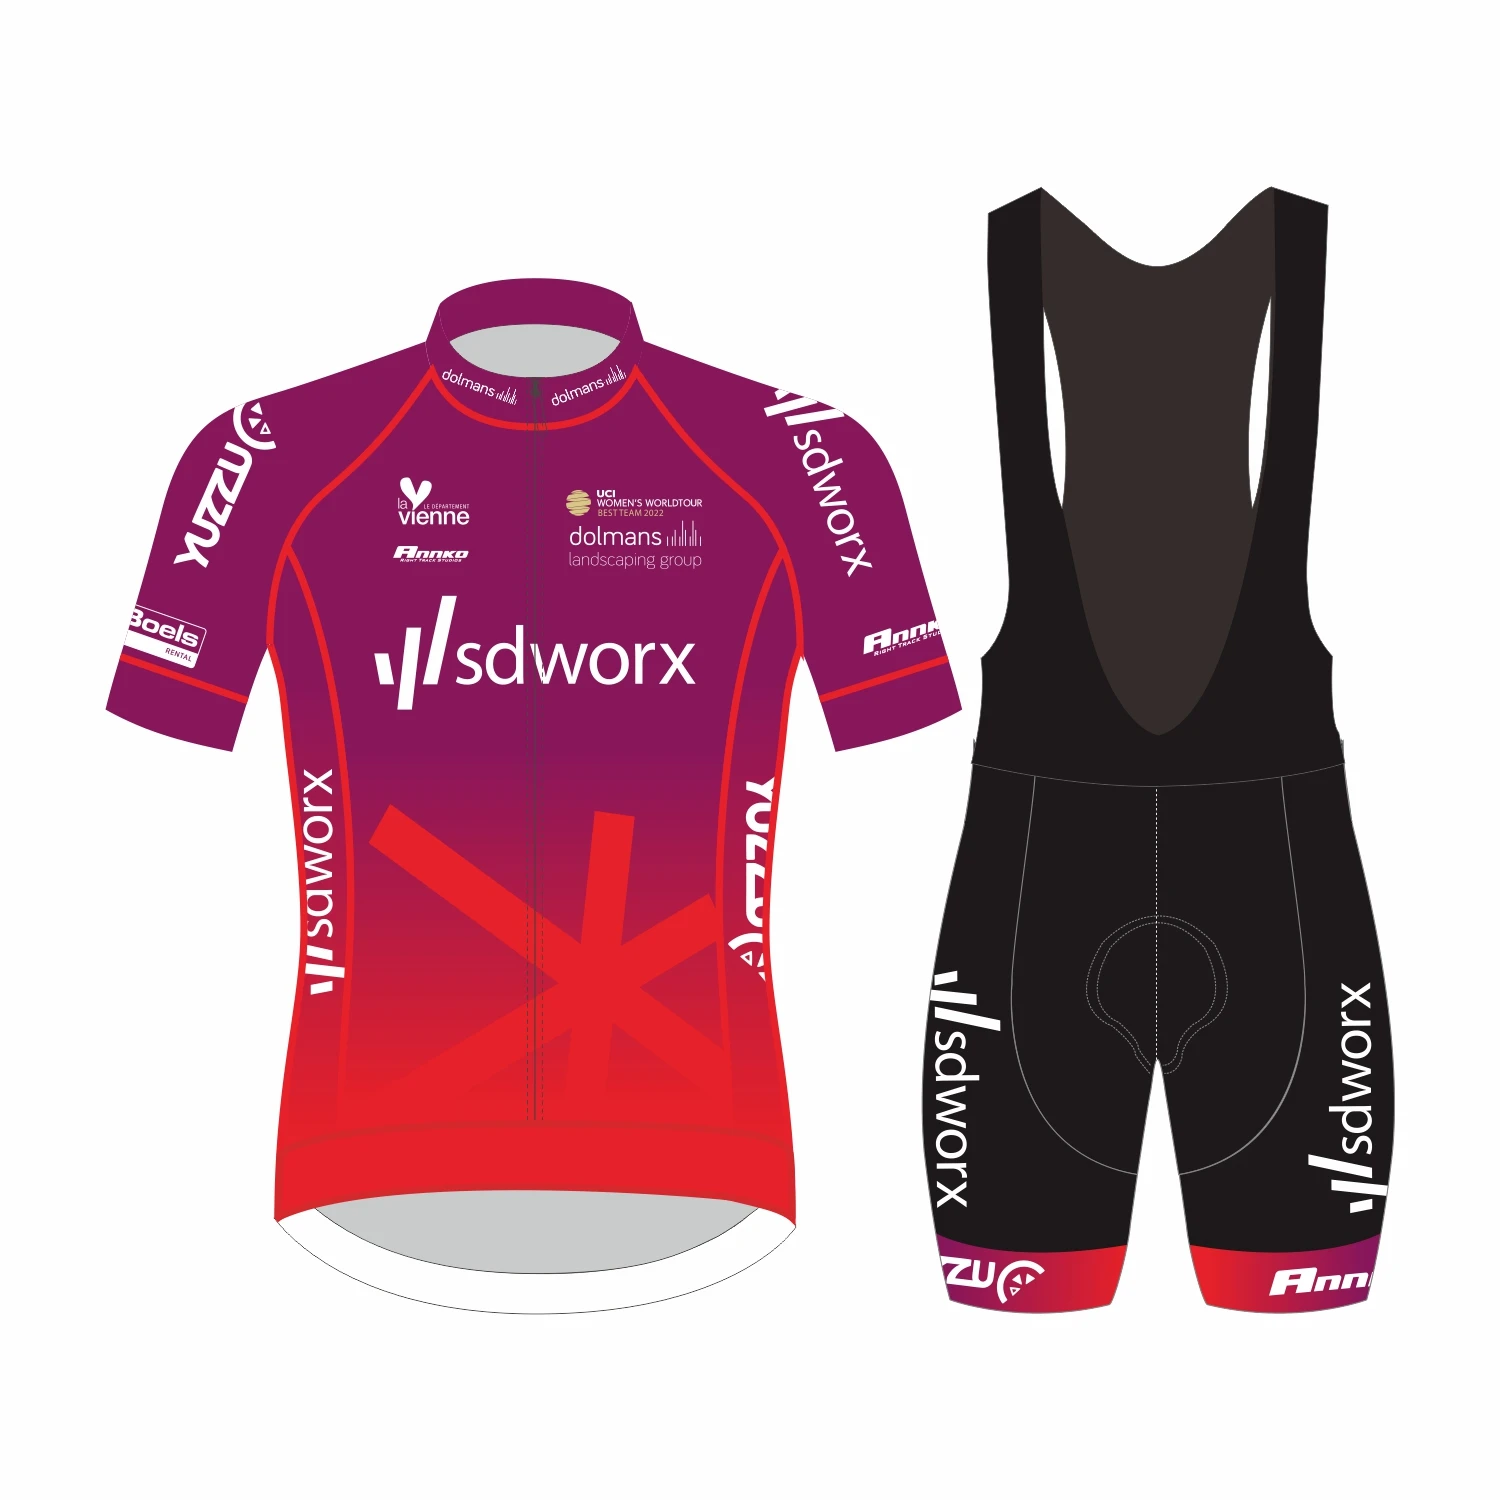 Pro sdworx-Maillot de cyclisme respirant et coloré unisexe, vêtements de vélo de route, de qualité supérieure, été